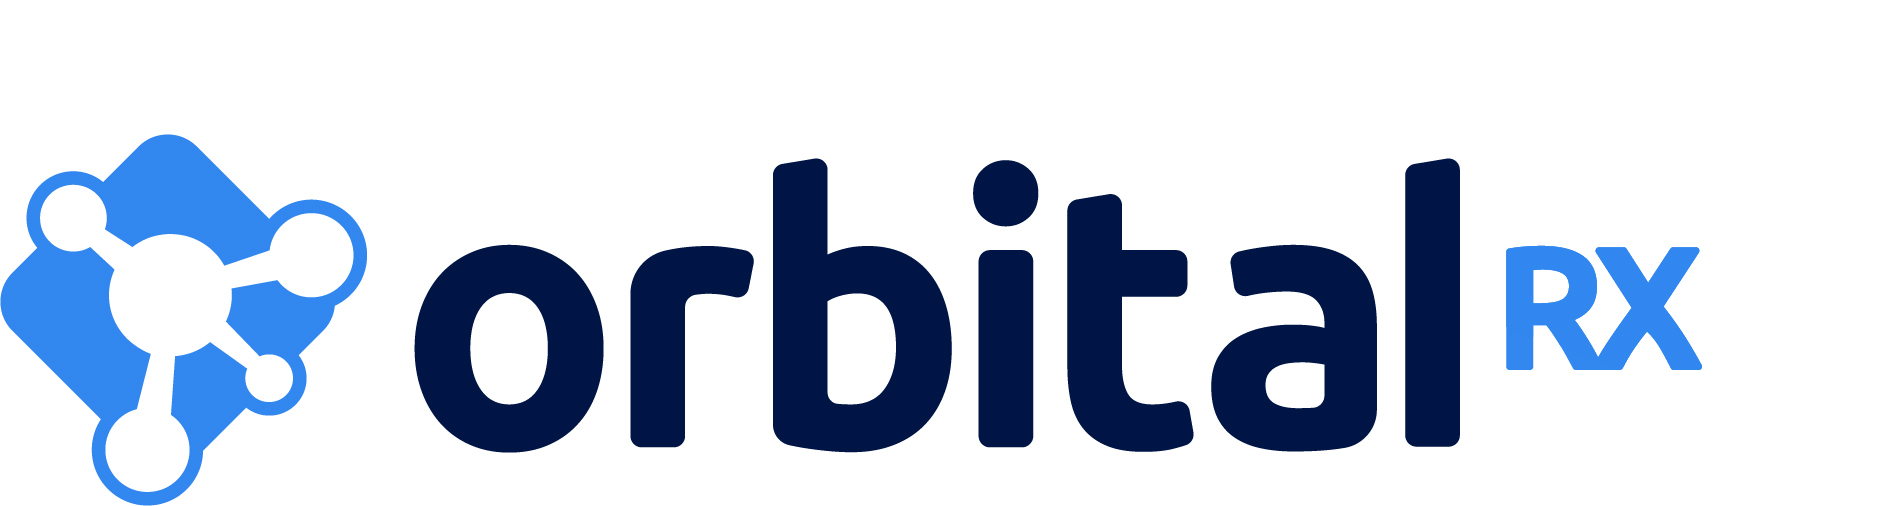 OrbitaRx Logo